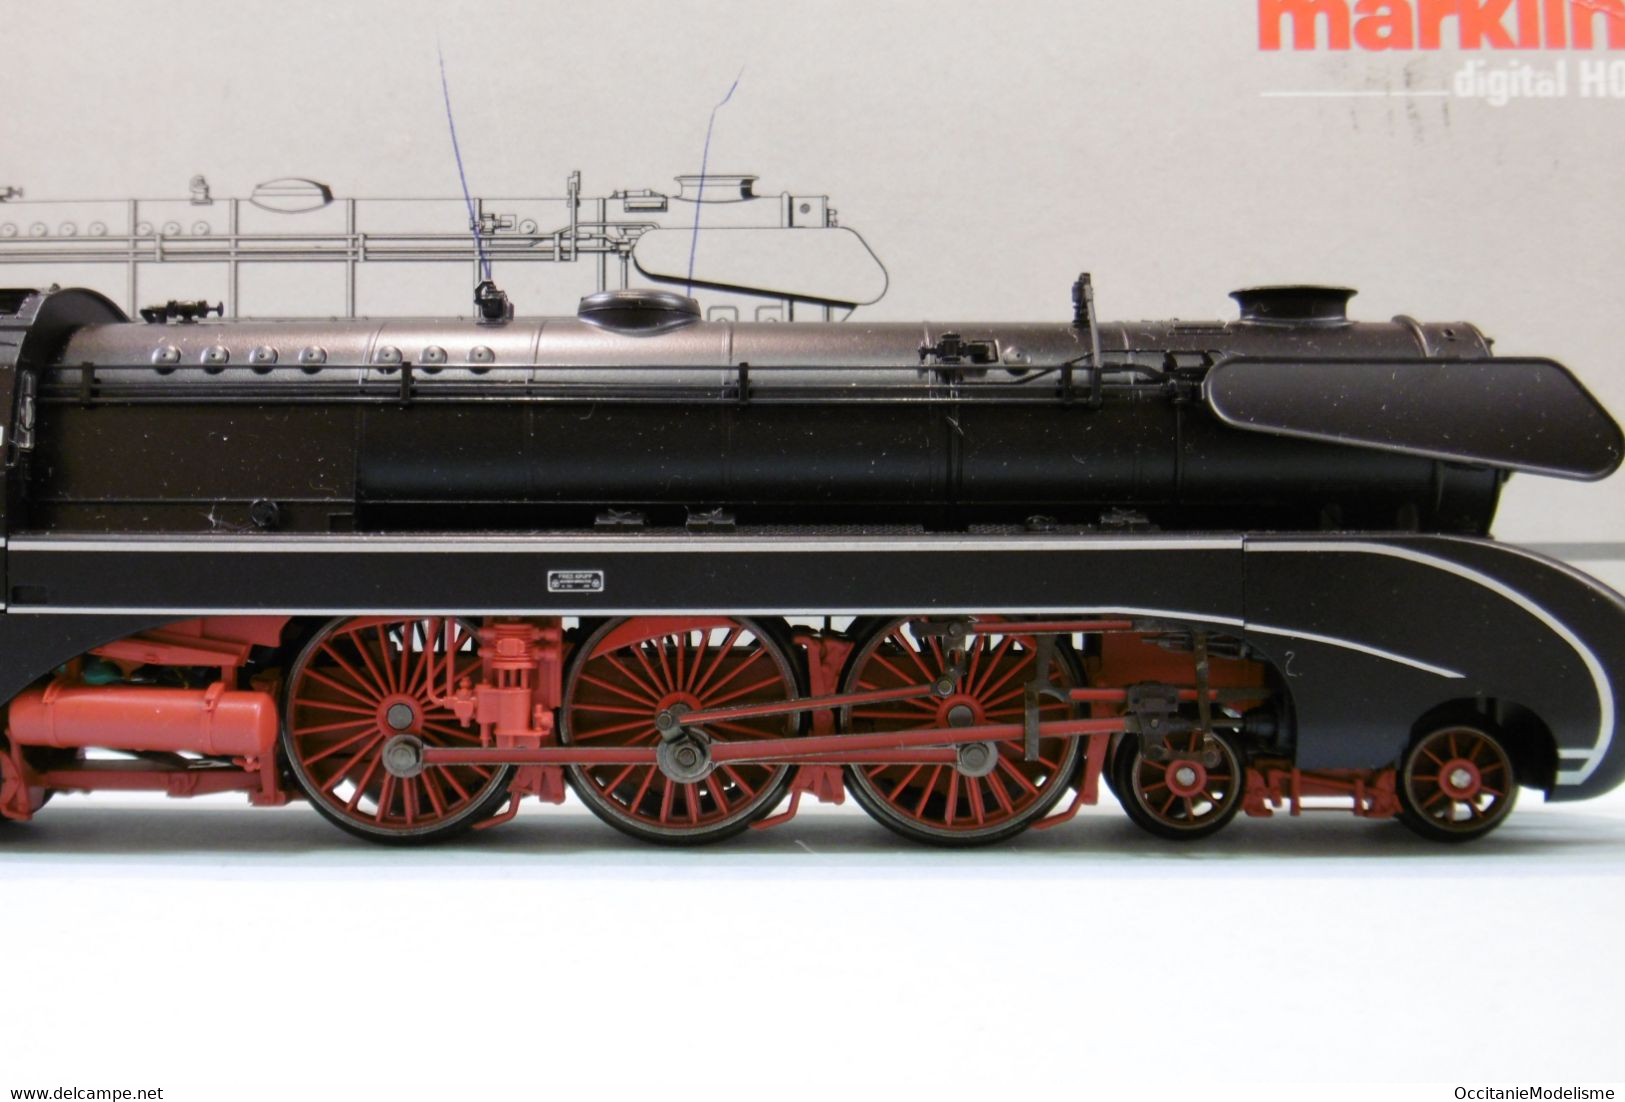 Märklin 3 Rails - Locomotive Vapeur BR 10 001 DB ép. III Delta Digital Sound Réf. 37080 BO HO 1/87 - Locomotive